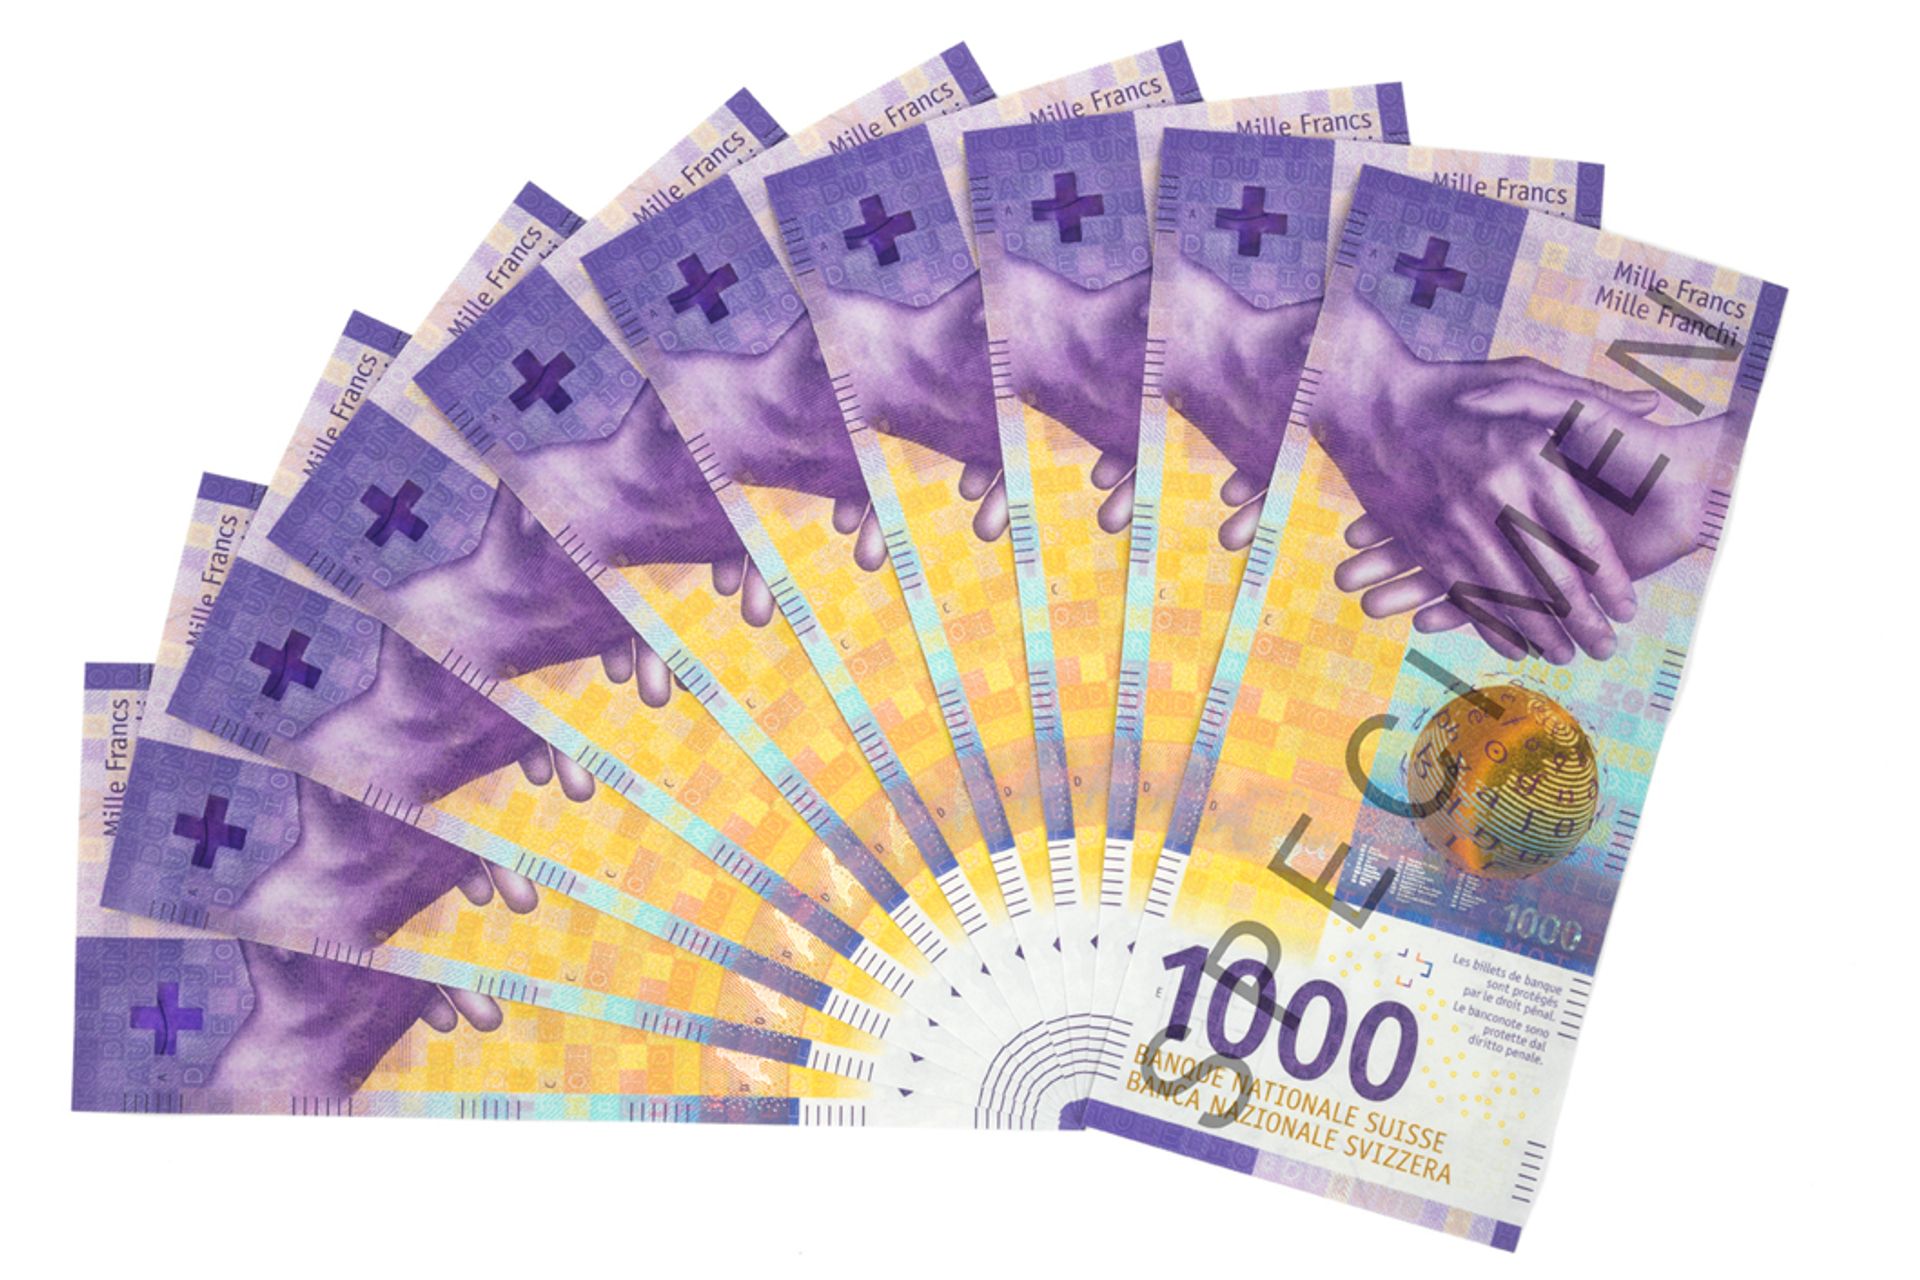 La banconata svizzera da 1000 franchi è quella con il più alto valore nominale al mondo